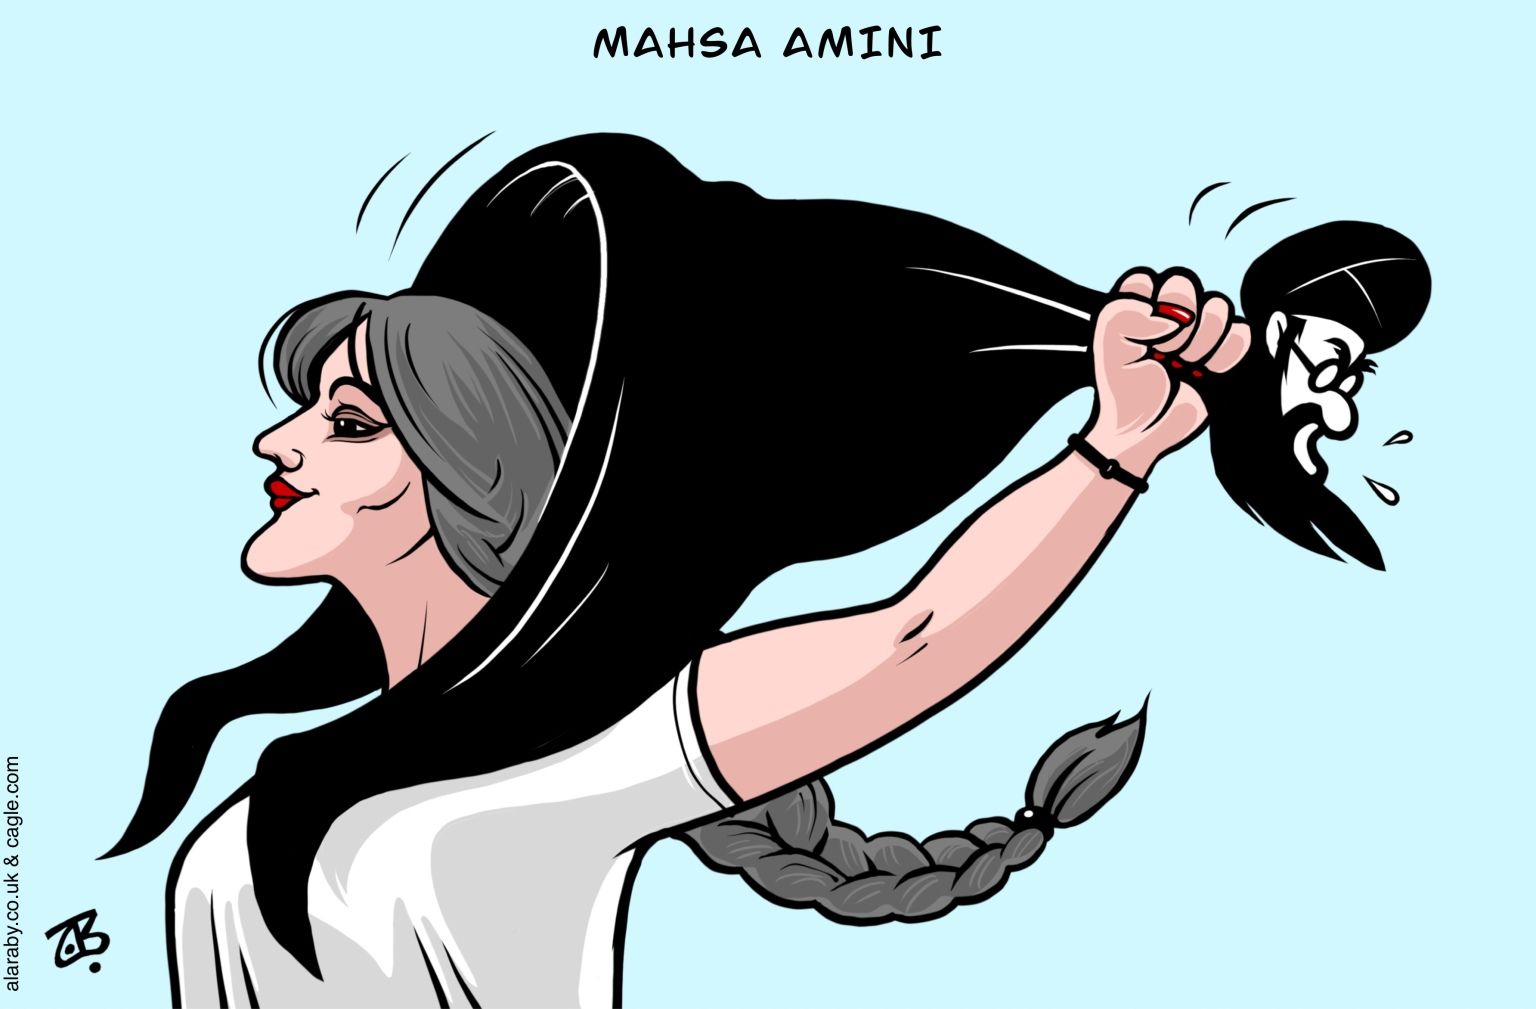 Mahsa Amini - newsjustin.press - editorial cartoon